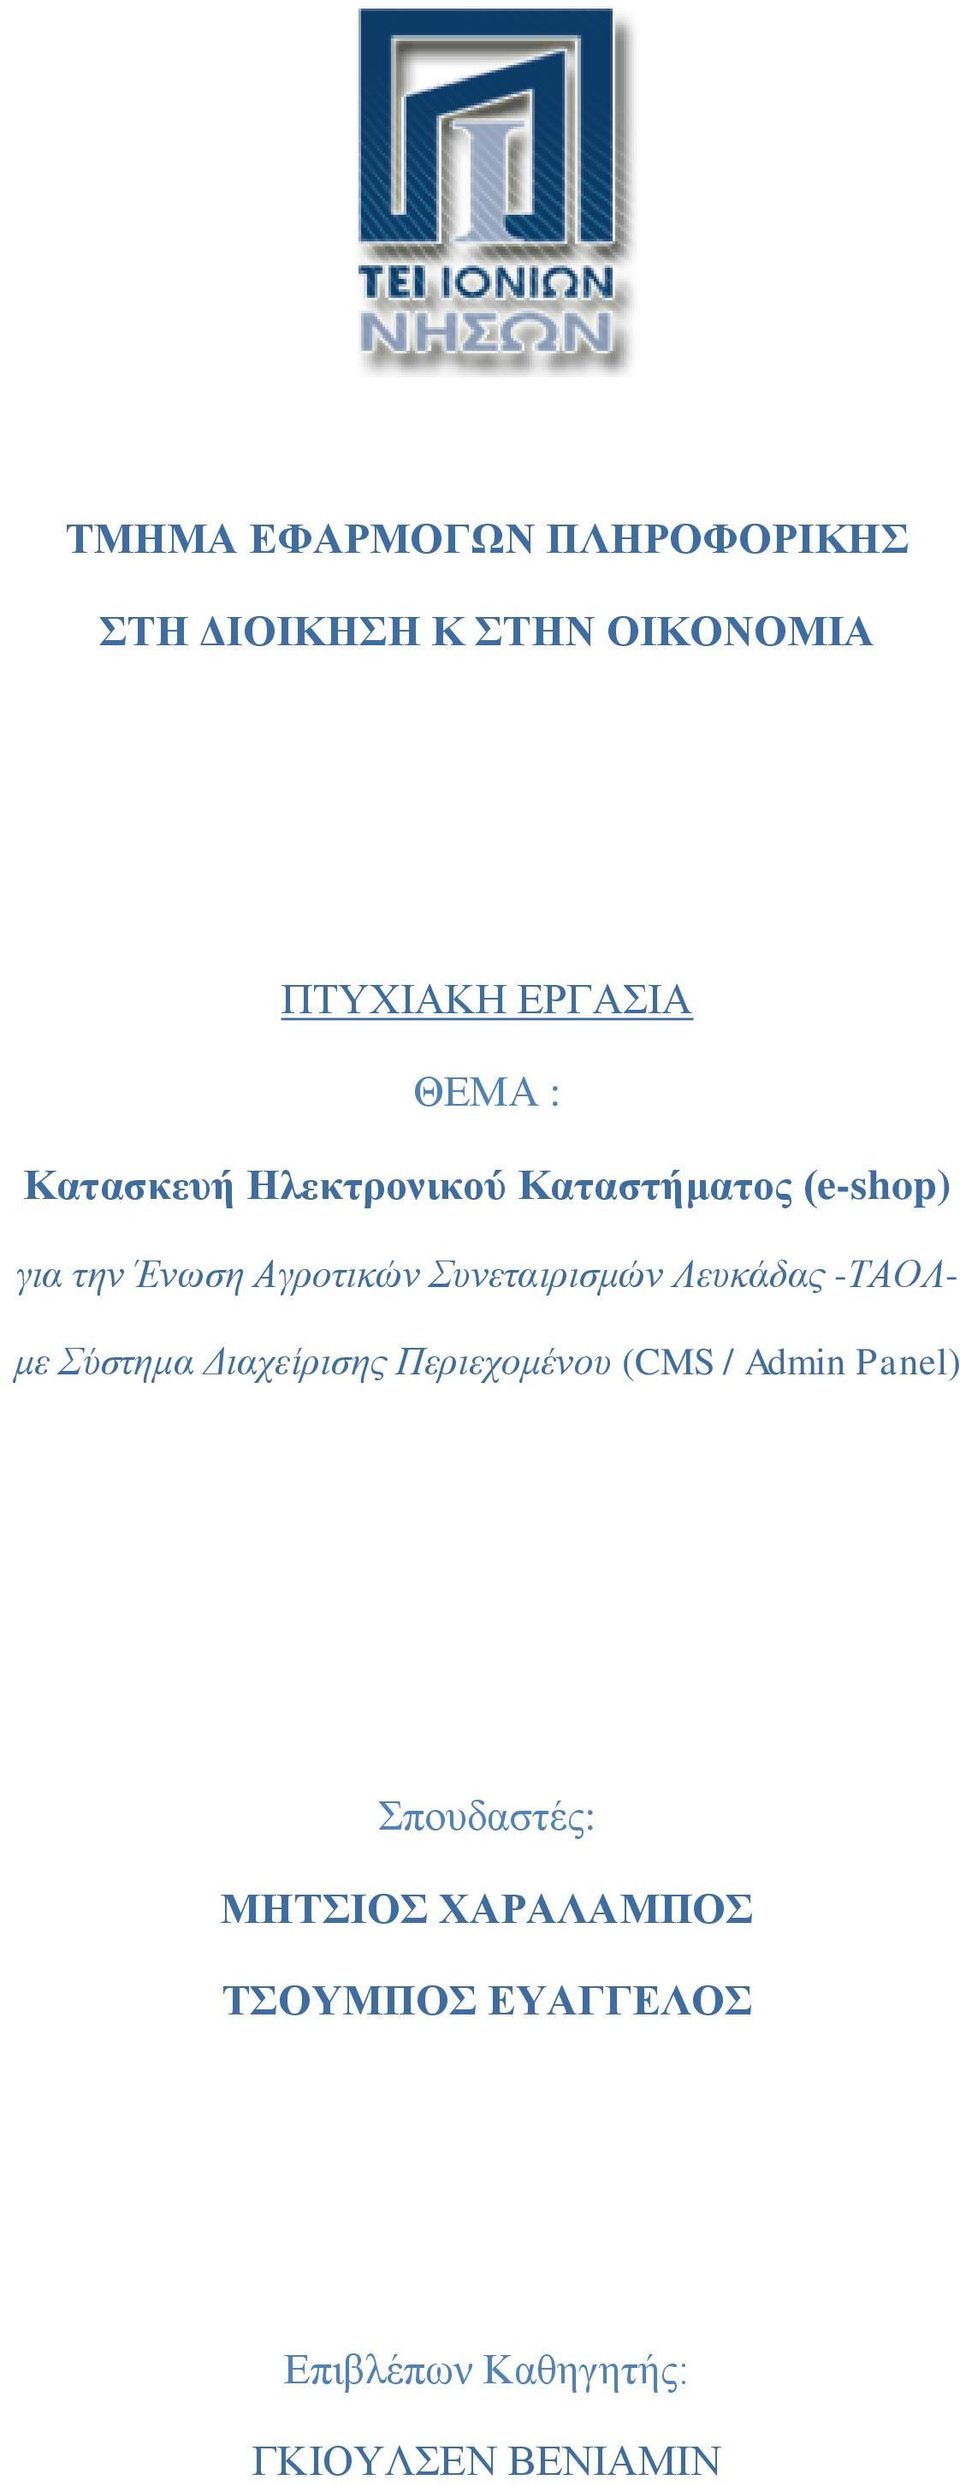 Συνεταιρισμών Λευκάδας -ΤΑΟΛμε Σύστημα Διαχείρισης Περιεχομένου (CMS / Admin